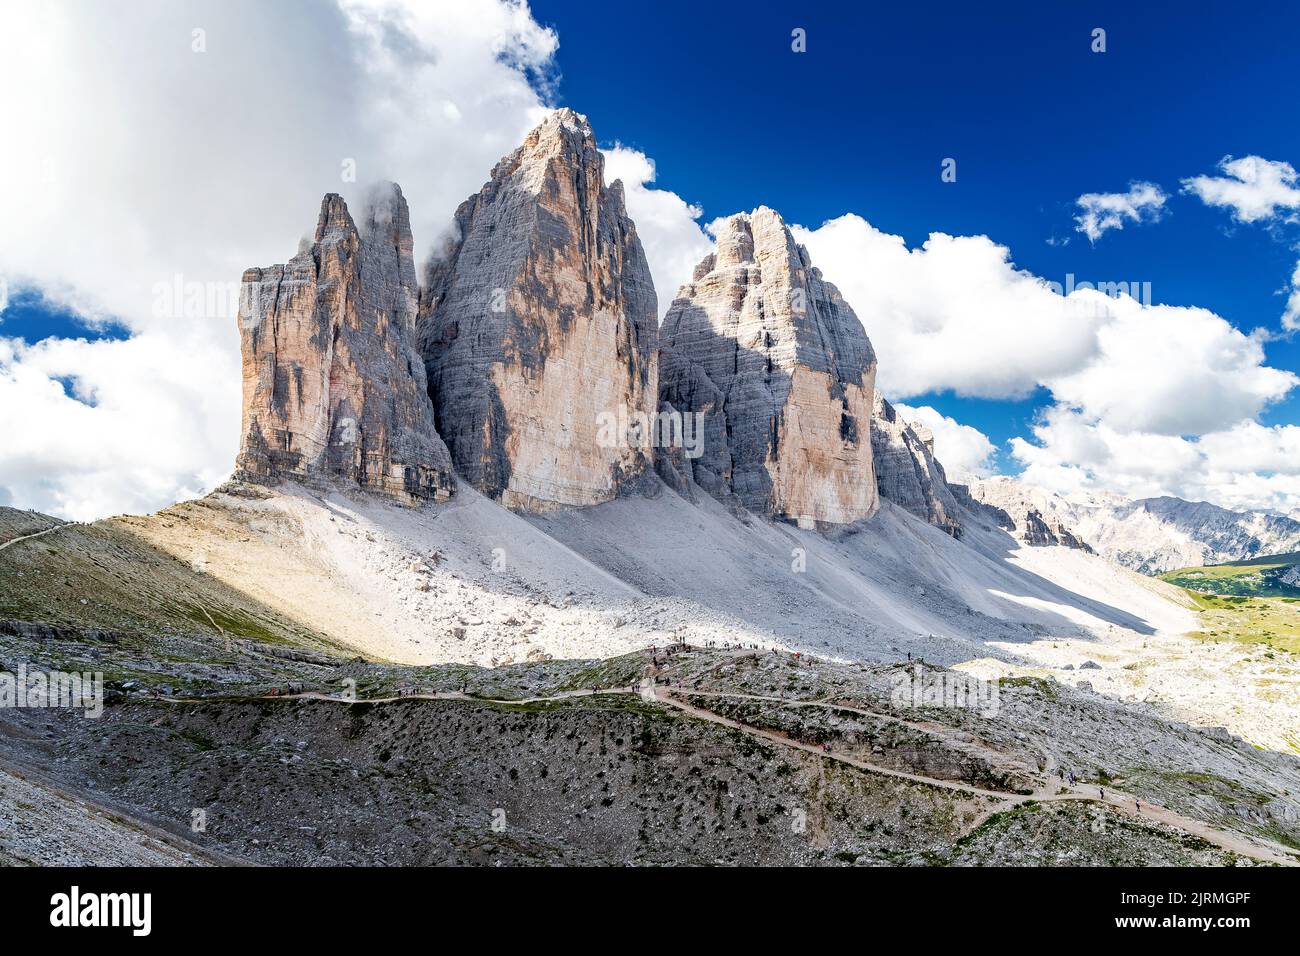 Famous three distinctive peaks of the Drei Zinnen (Tre Cime di Lavaredo) in the Dolomite Alps in Italy Stock Photo